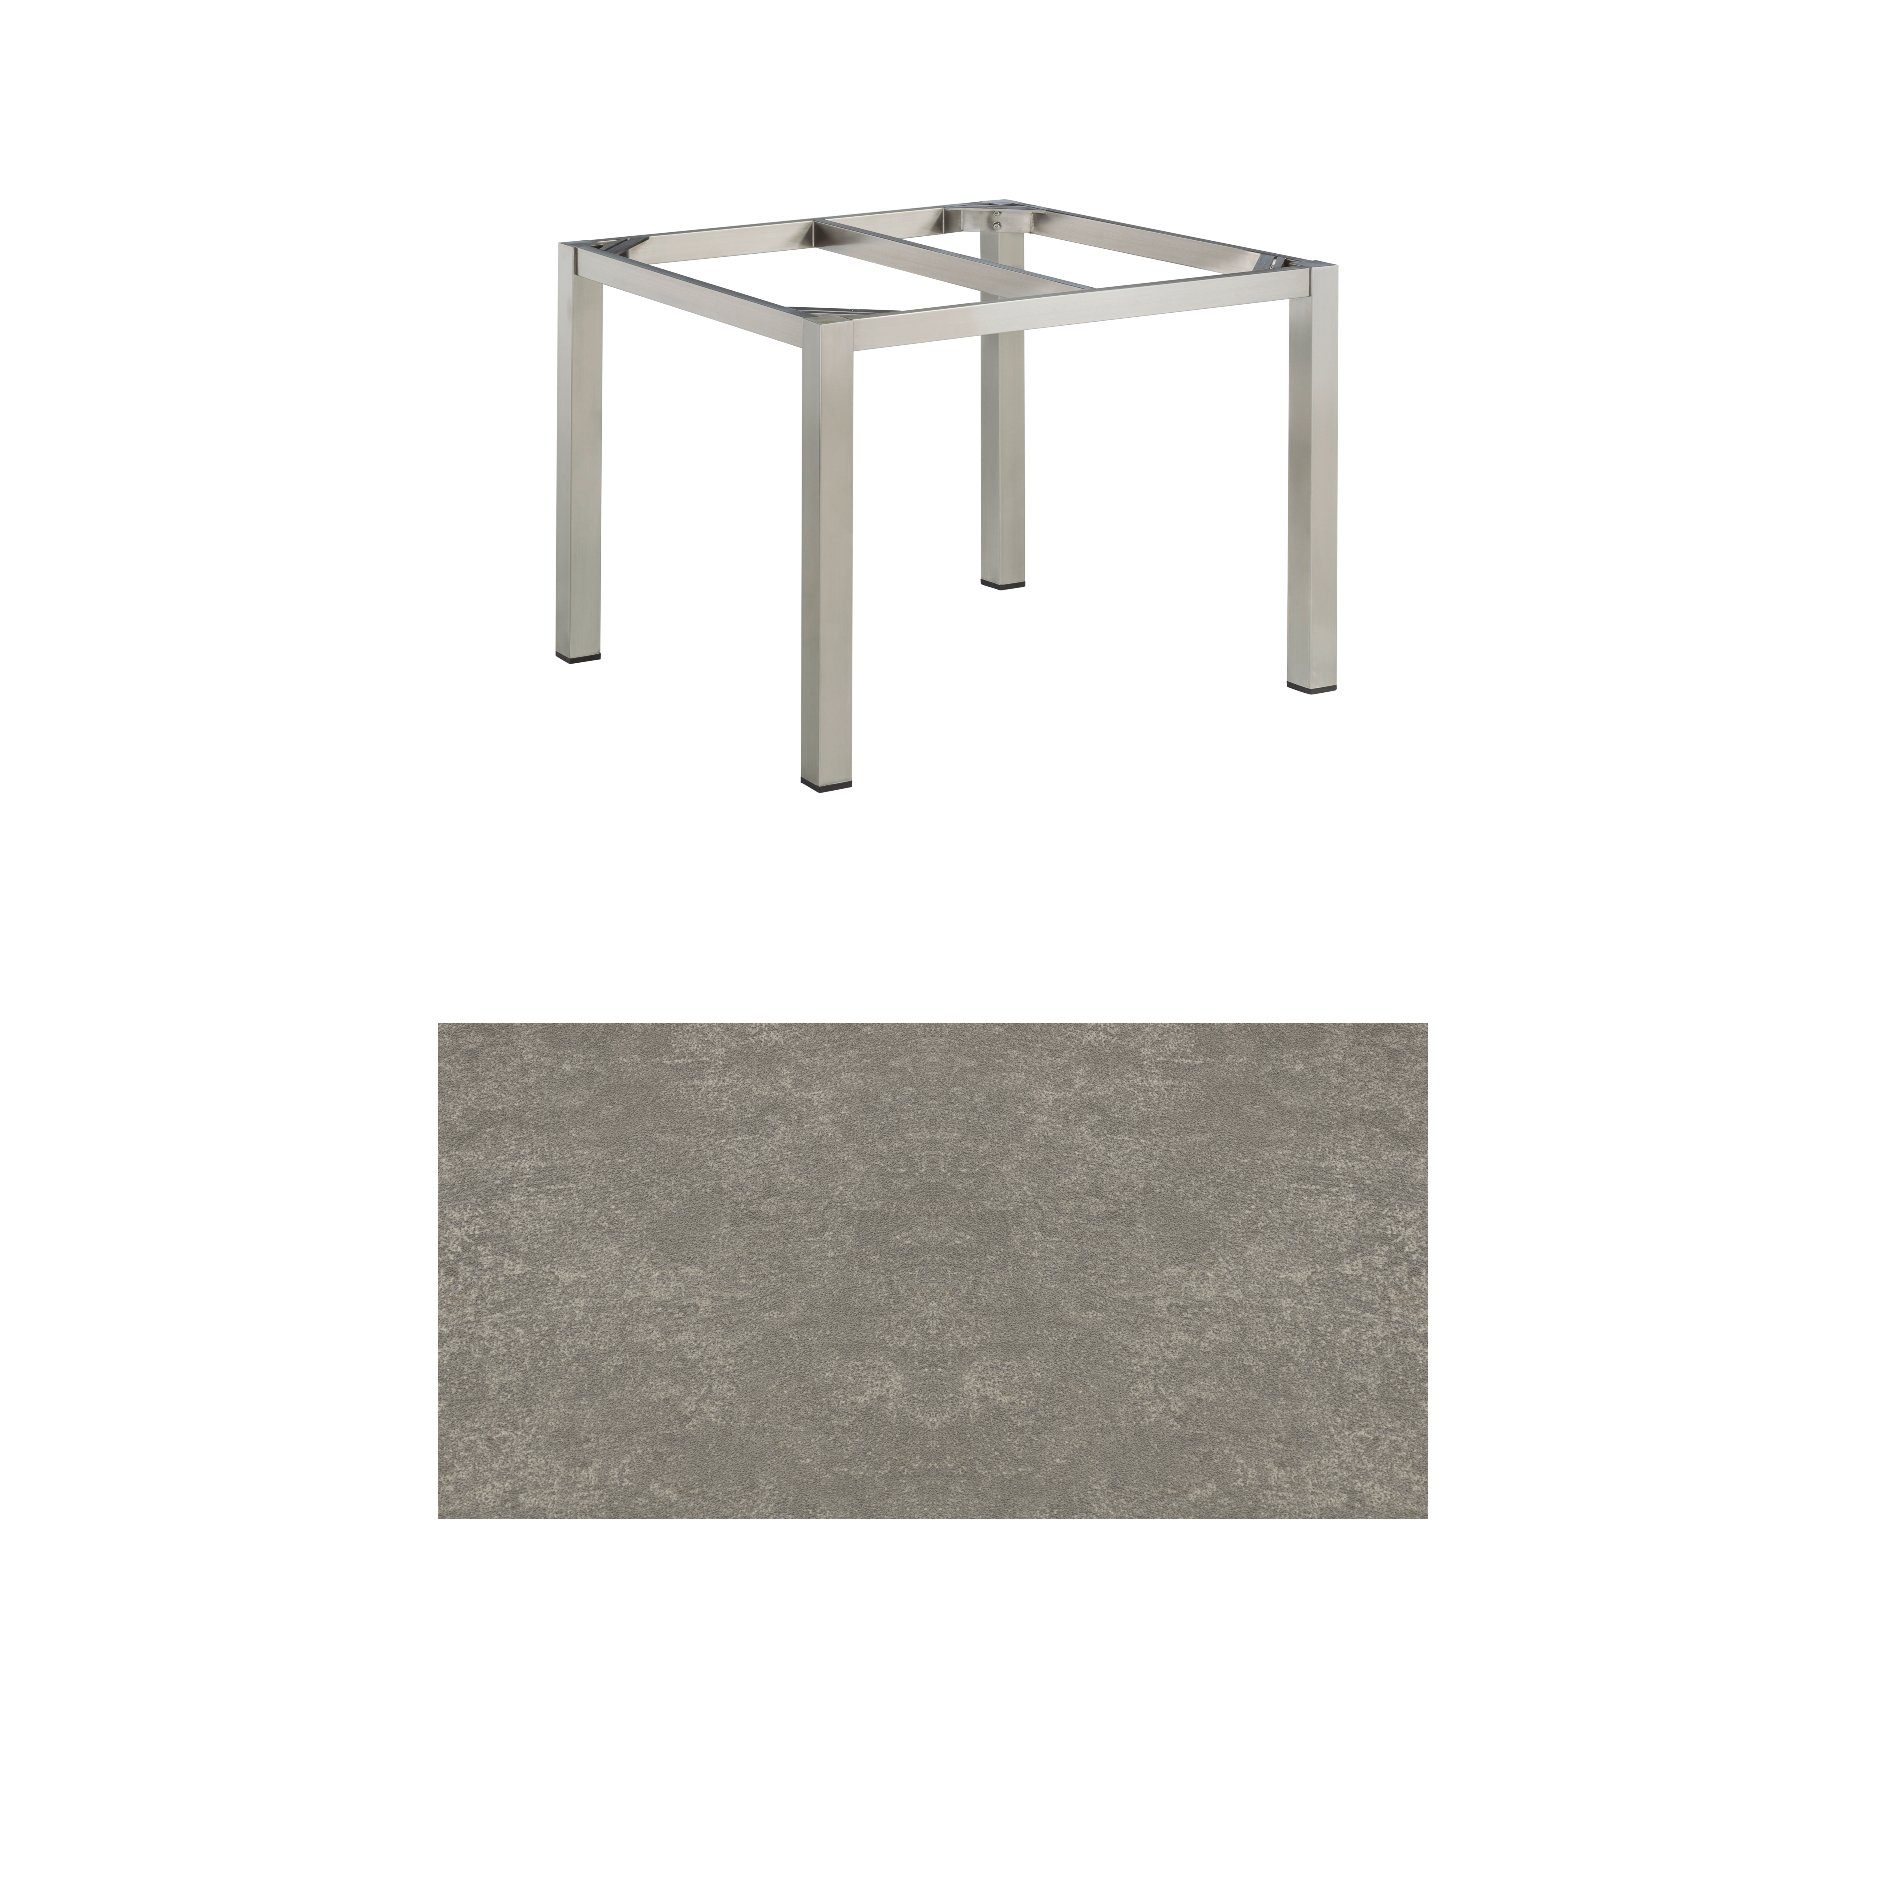 Kettler Gartentisch, Tischgestell 95x95cm "Cubic", Edelstahl, mit Tischplatte Keramik grau-taupe